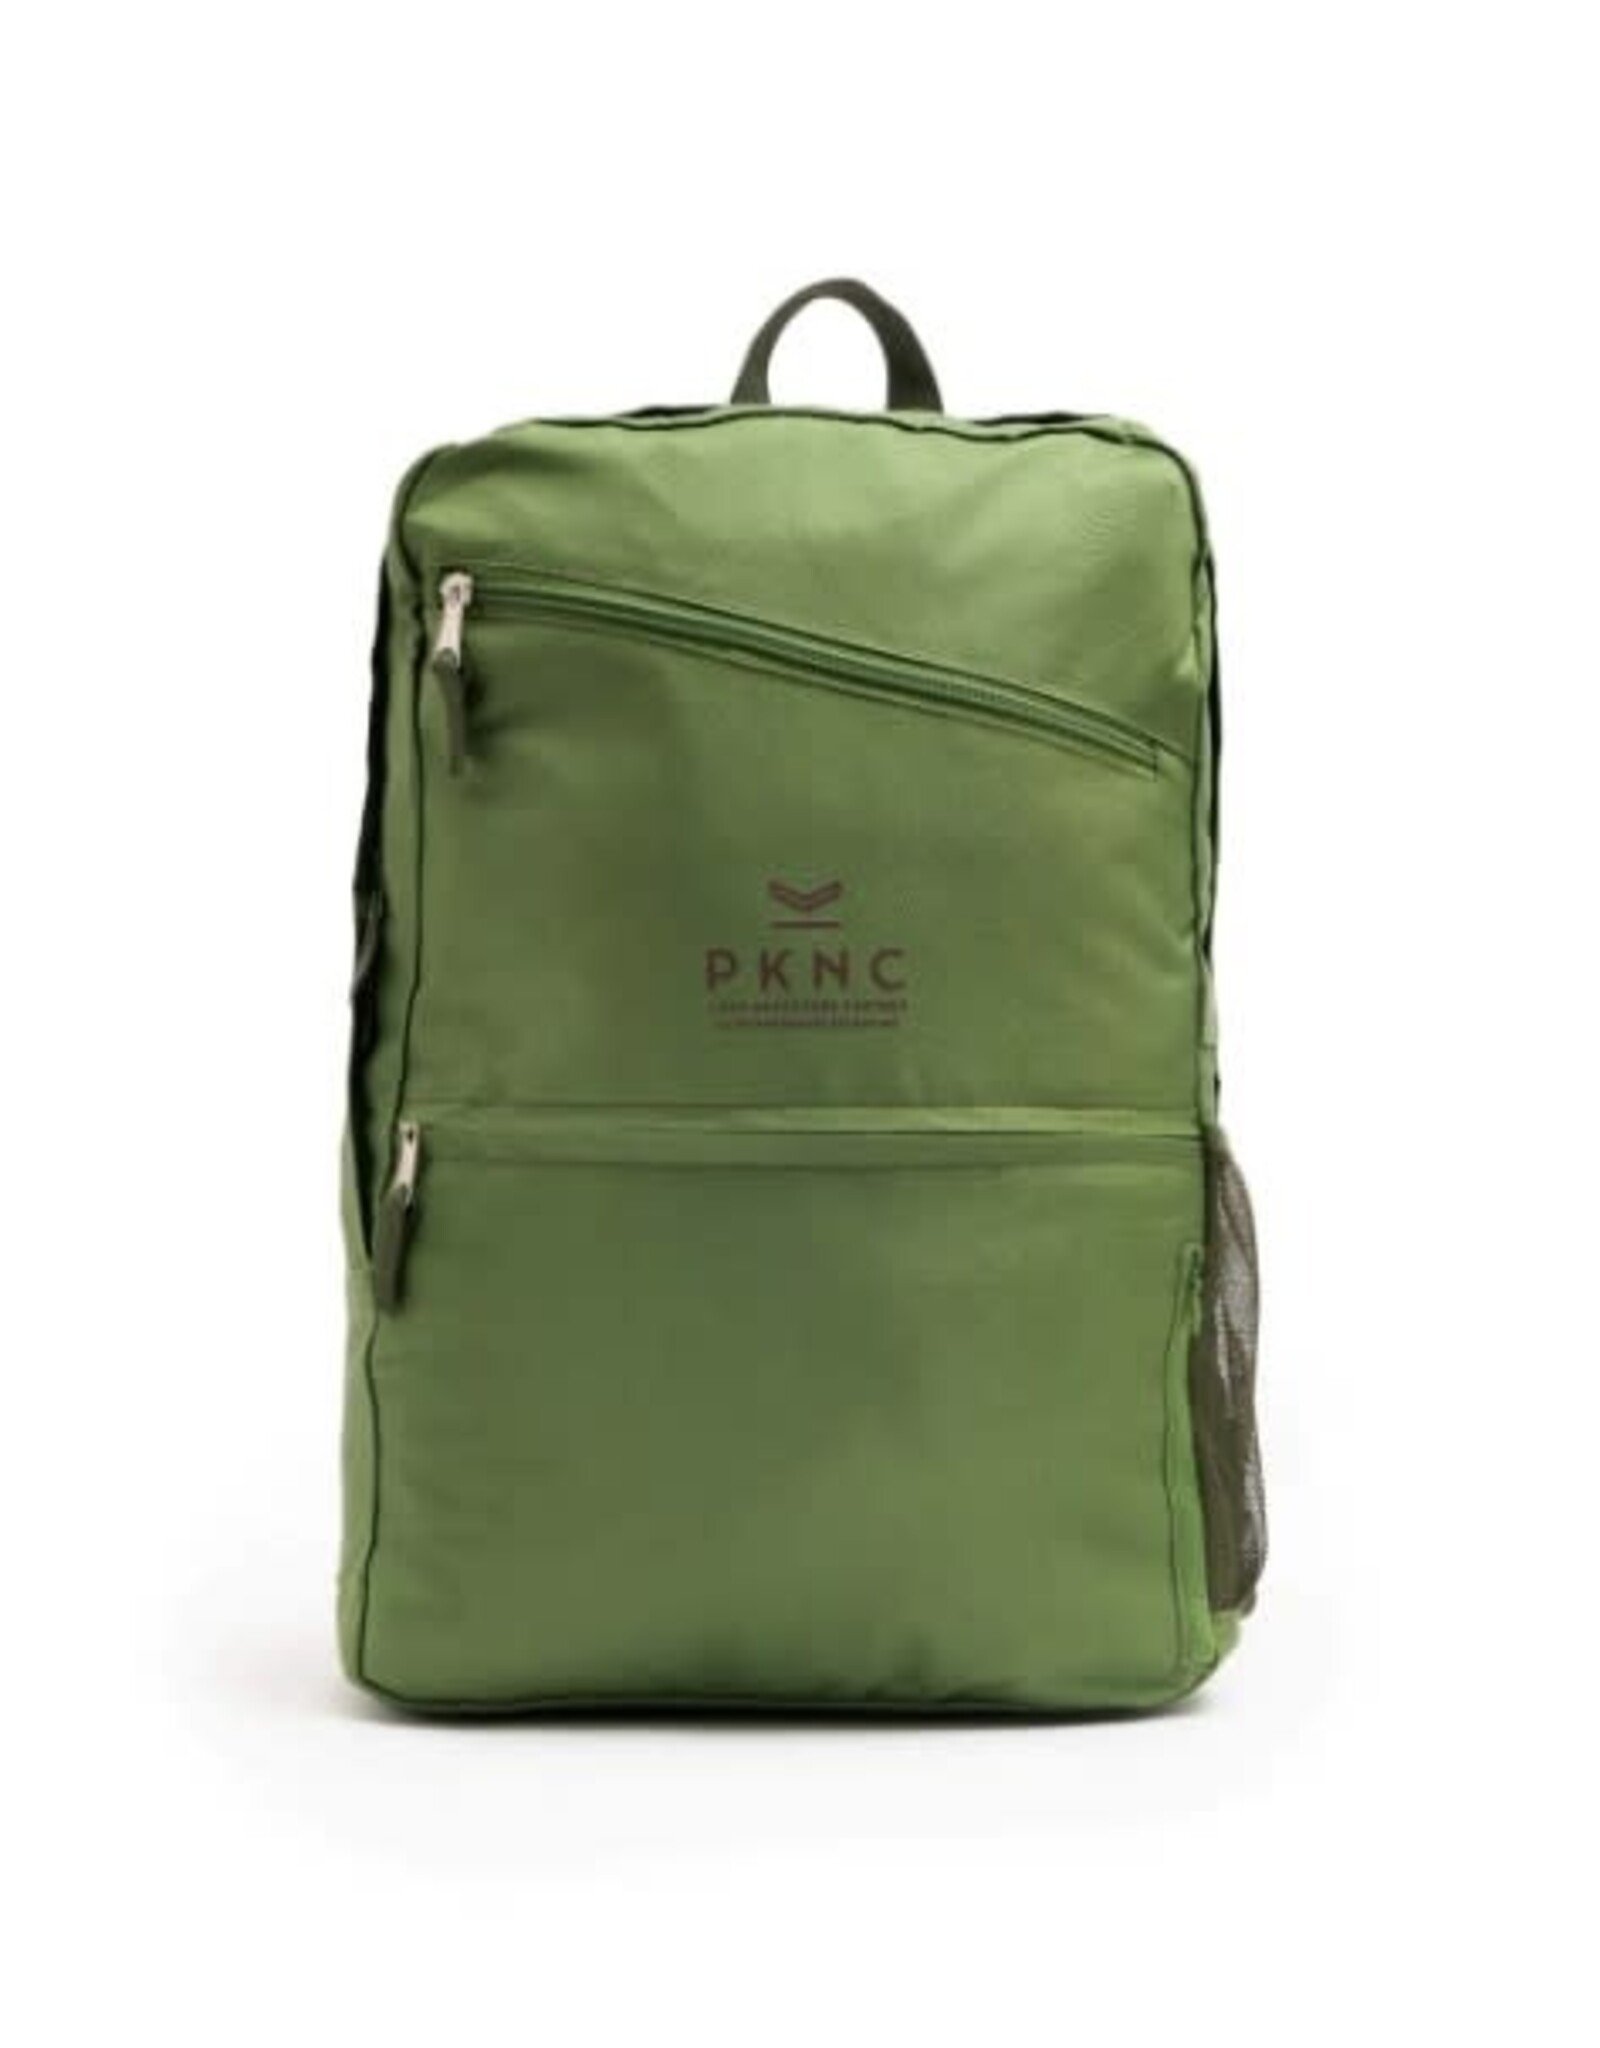 PKNC Sac de voyage Pack N Carry 18L pliable